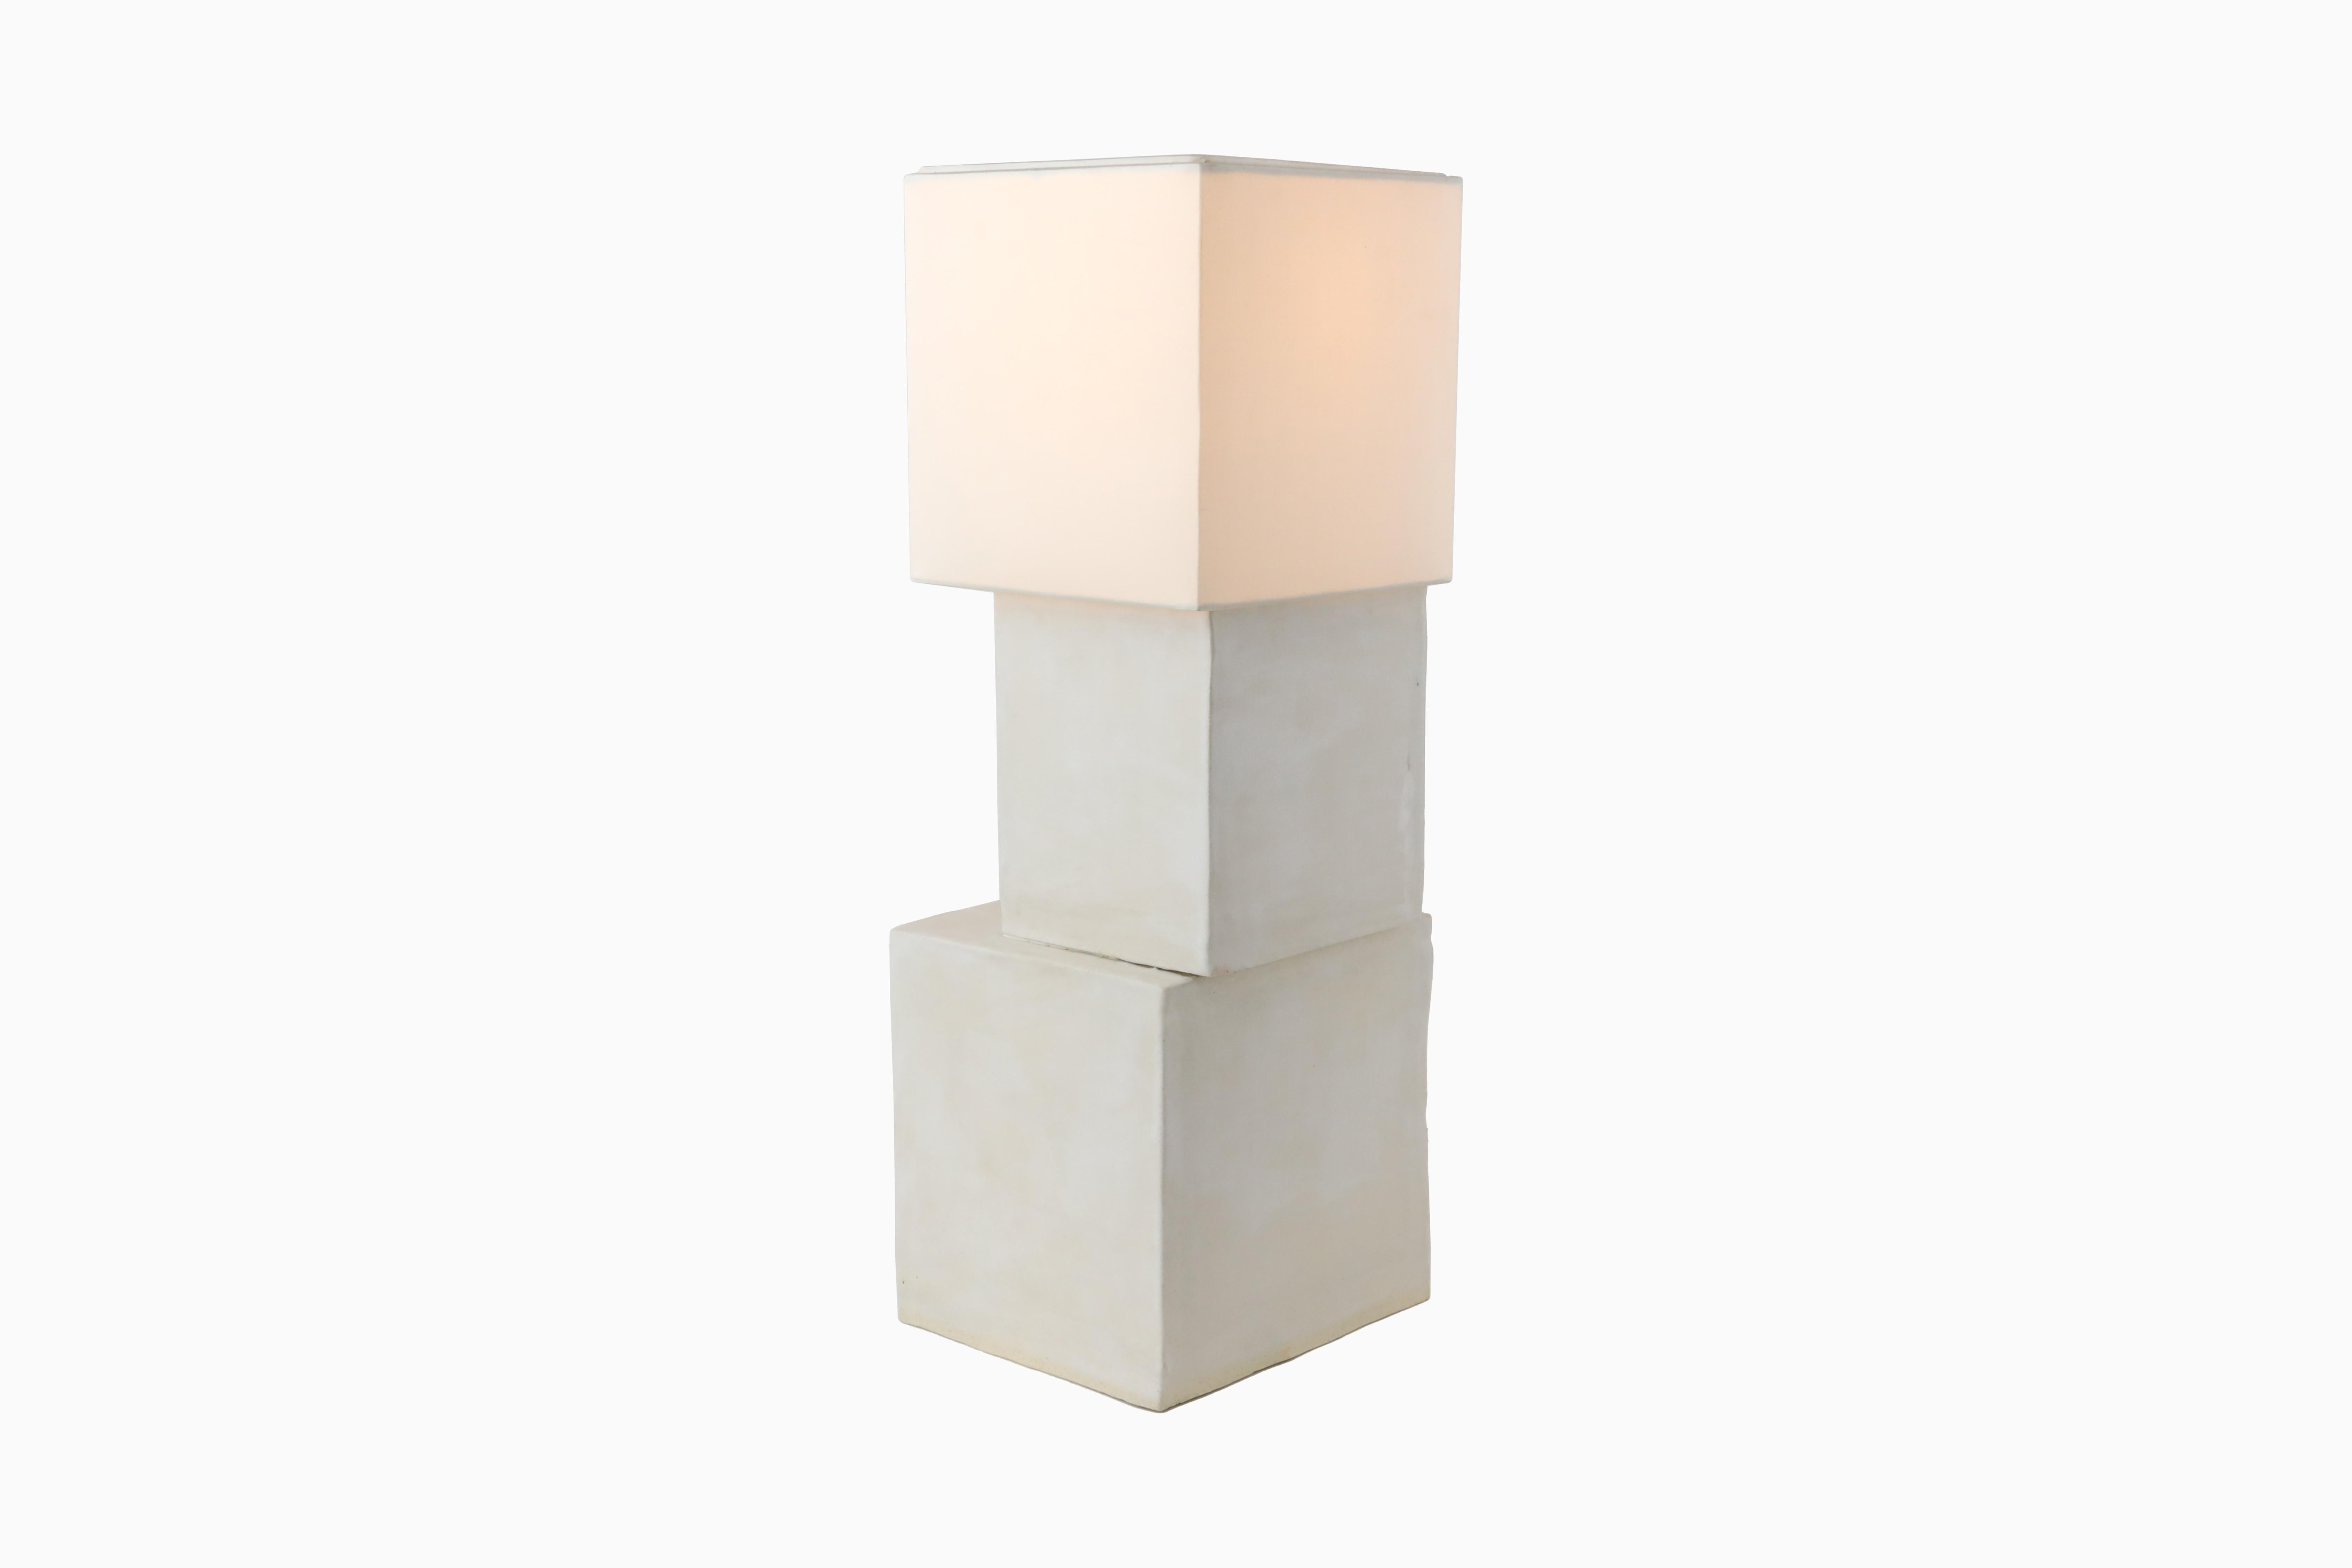 Die Stacked Cube Lamp wurde von der modernen Architektur von New York City inspiriert. Jeder Würfel ist aus weißem Ton gefertigt und mit einer mattweißen Glasur versehen. Die Würfel werden außermittig zusammengesetzt, finden aber in ihrer